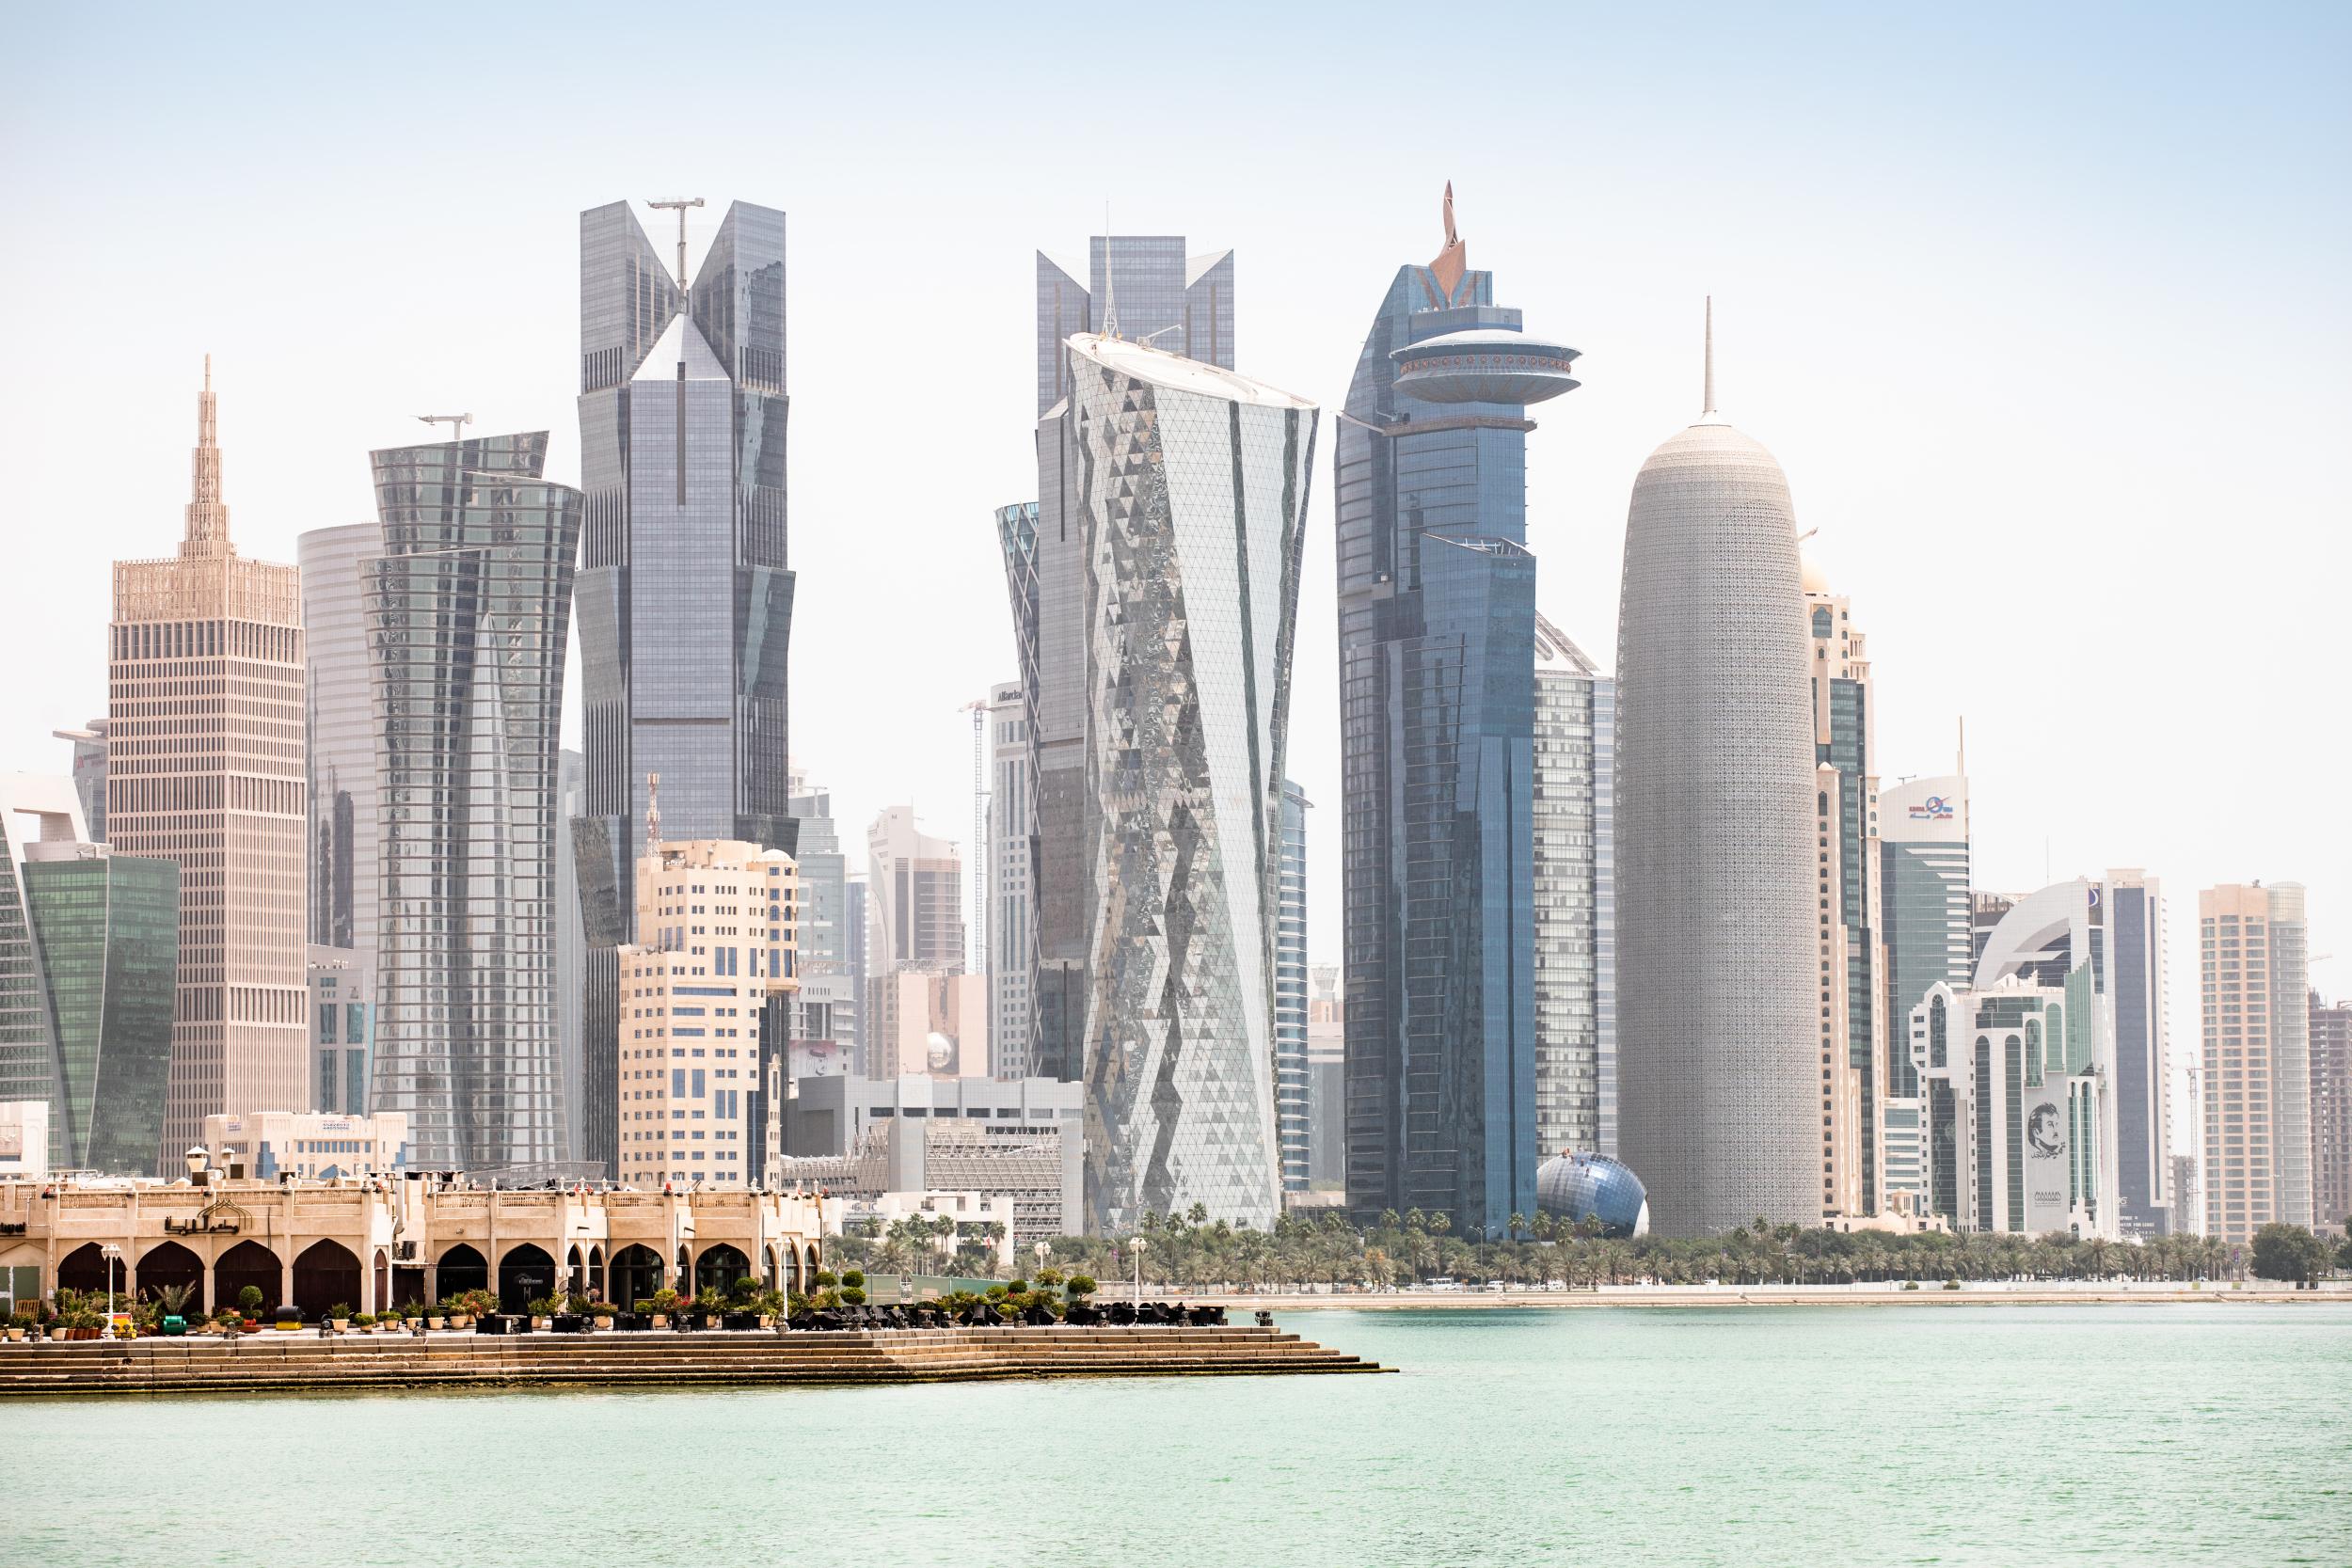 Doha's Corniche boasts plenty of skyscrapers